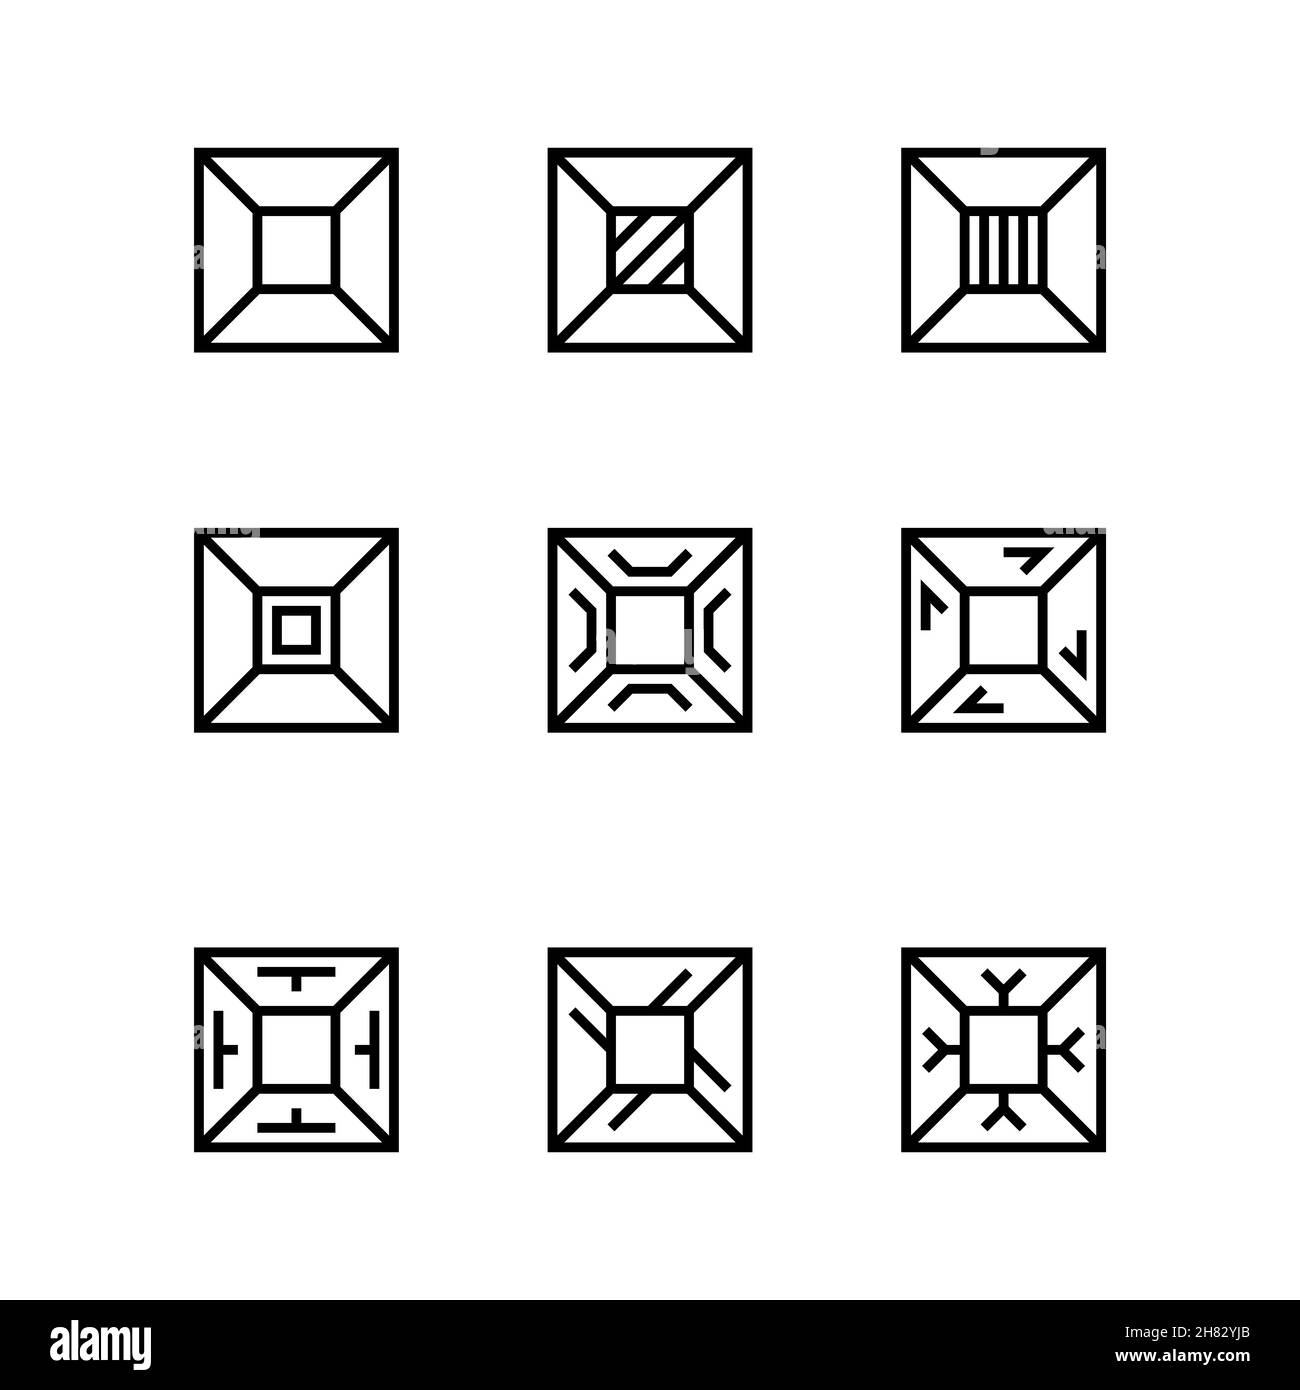 Ensemble de formes linéaires carrées.Figures géométriques avec des motifs différents.Collection d'icônes rectangulaires linéaires.Éléments géométriques minimalistes Illustration de Vecteur